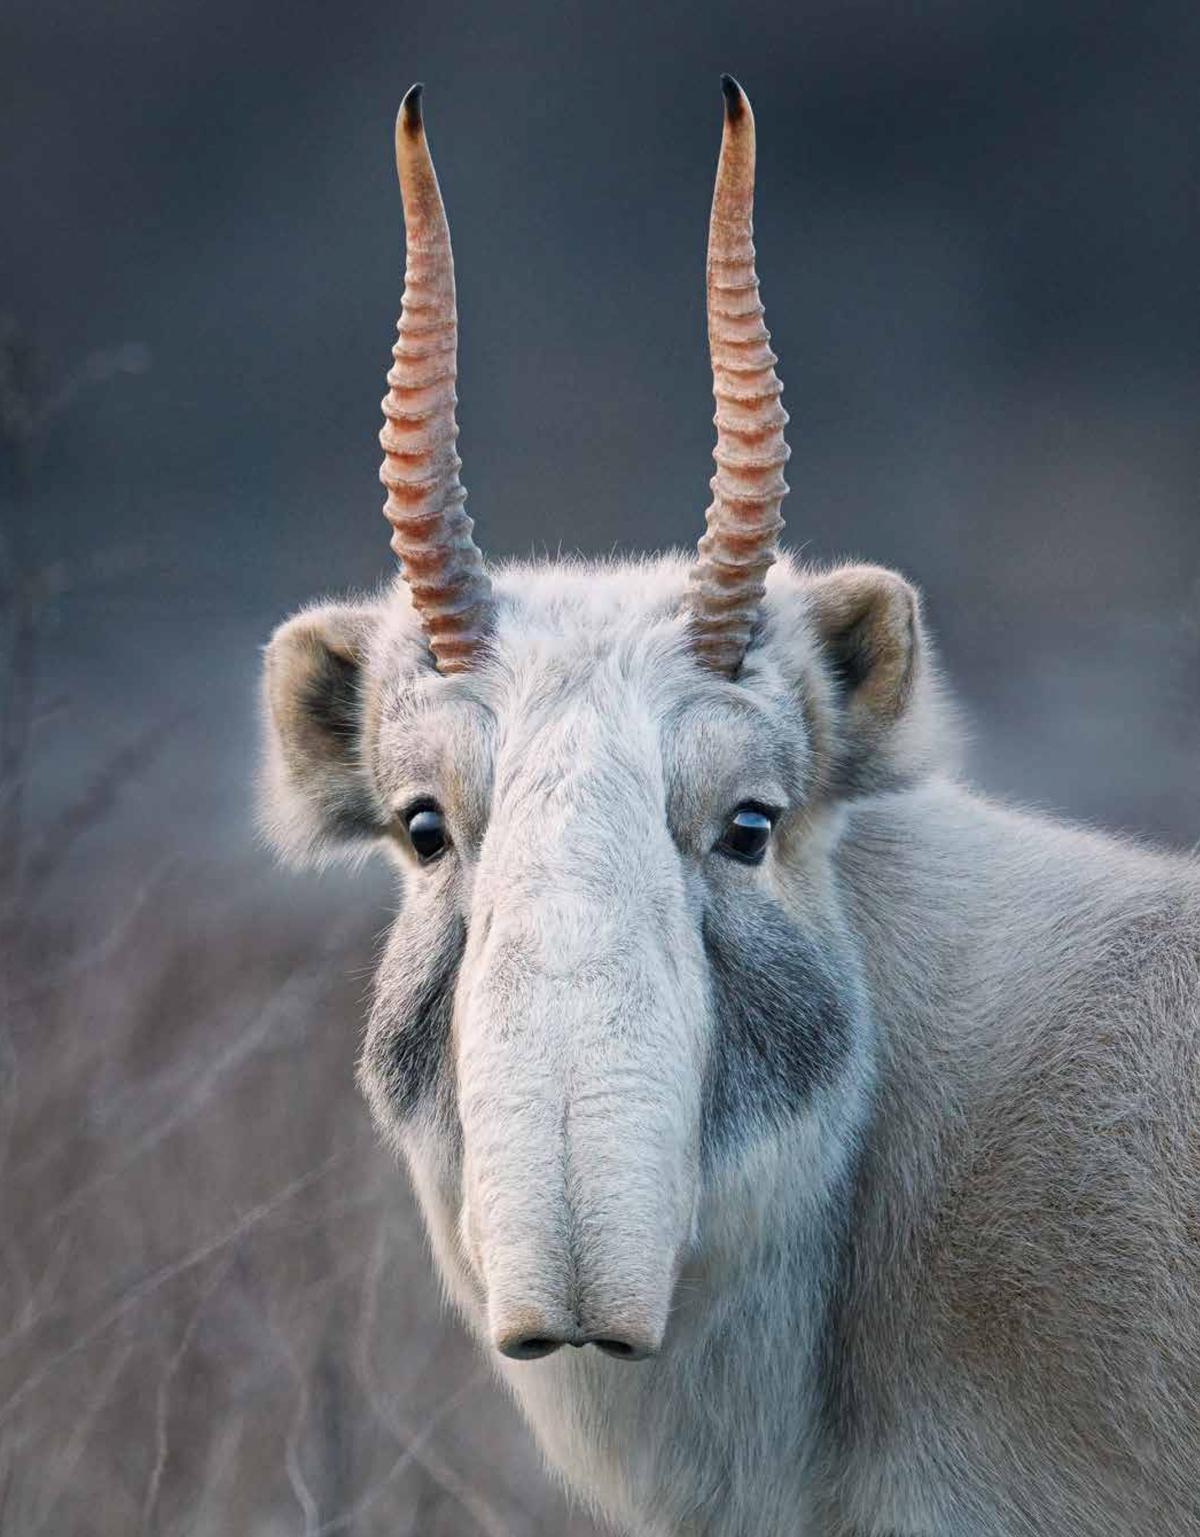 A saiga antelope in Russia. (Courtesy of <a href="https://timflach.com/">Tim Flach</a>)